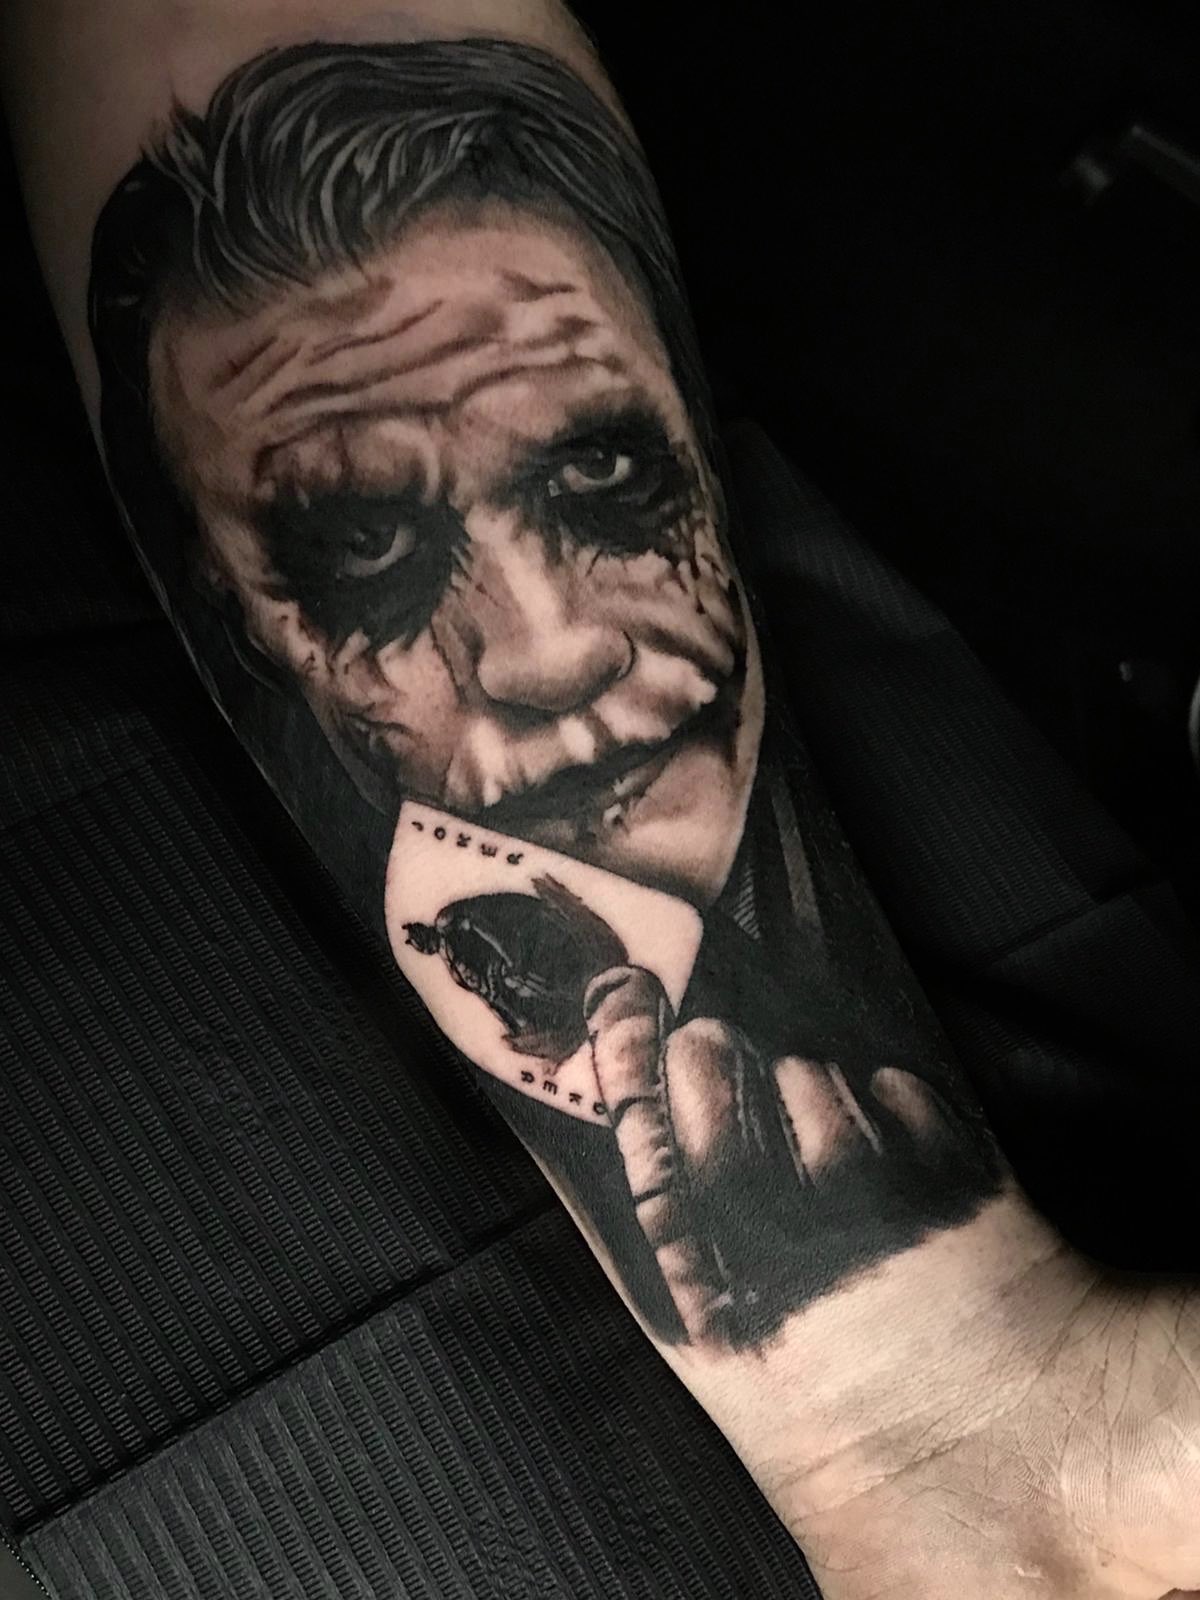 Heath Ledger joker on forearm by Lisa  Chameleon Tattoo  Facebook